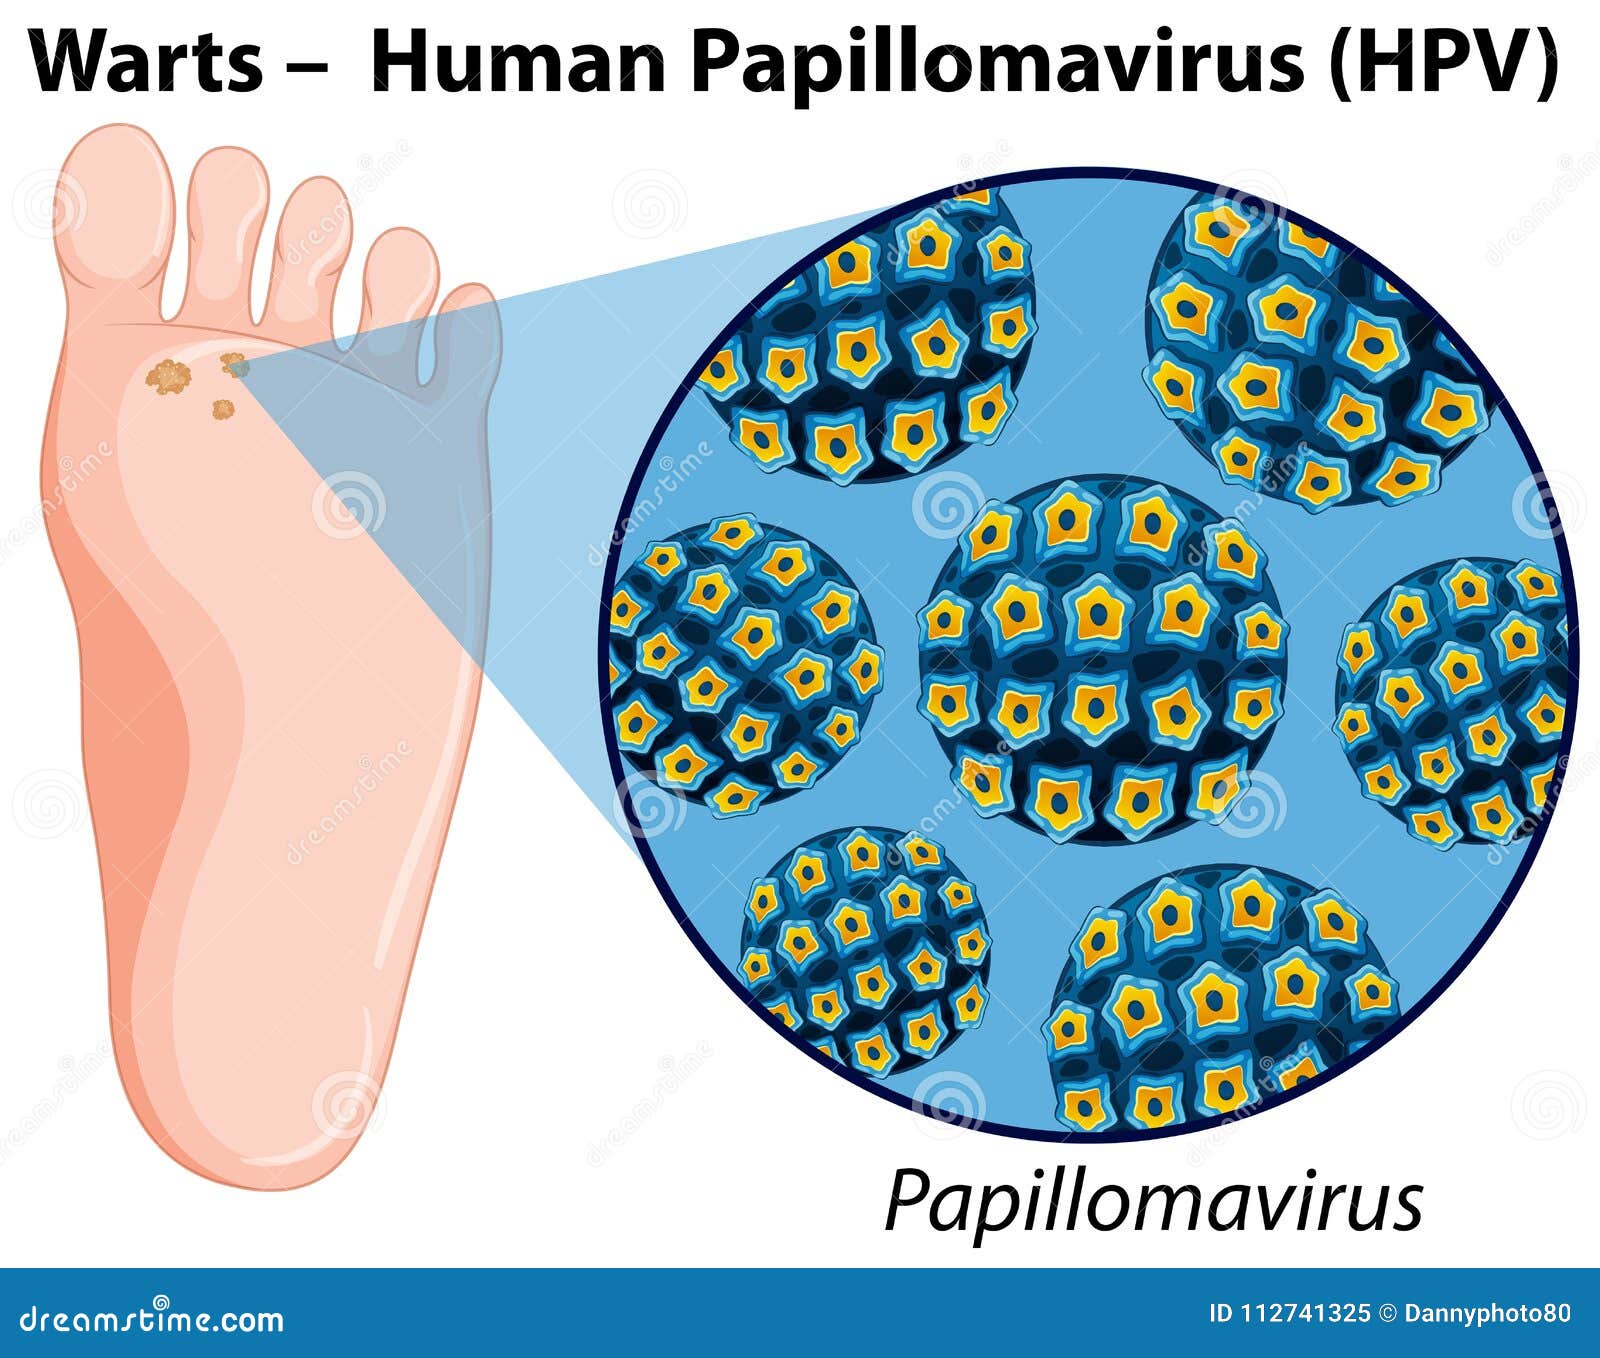 human papillomavirus diagram